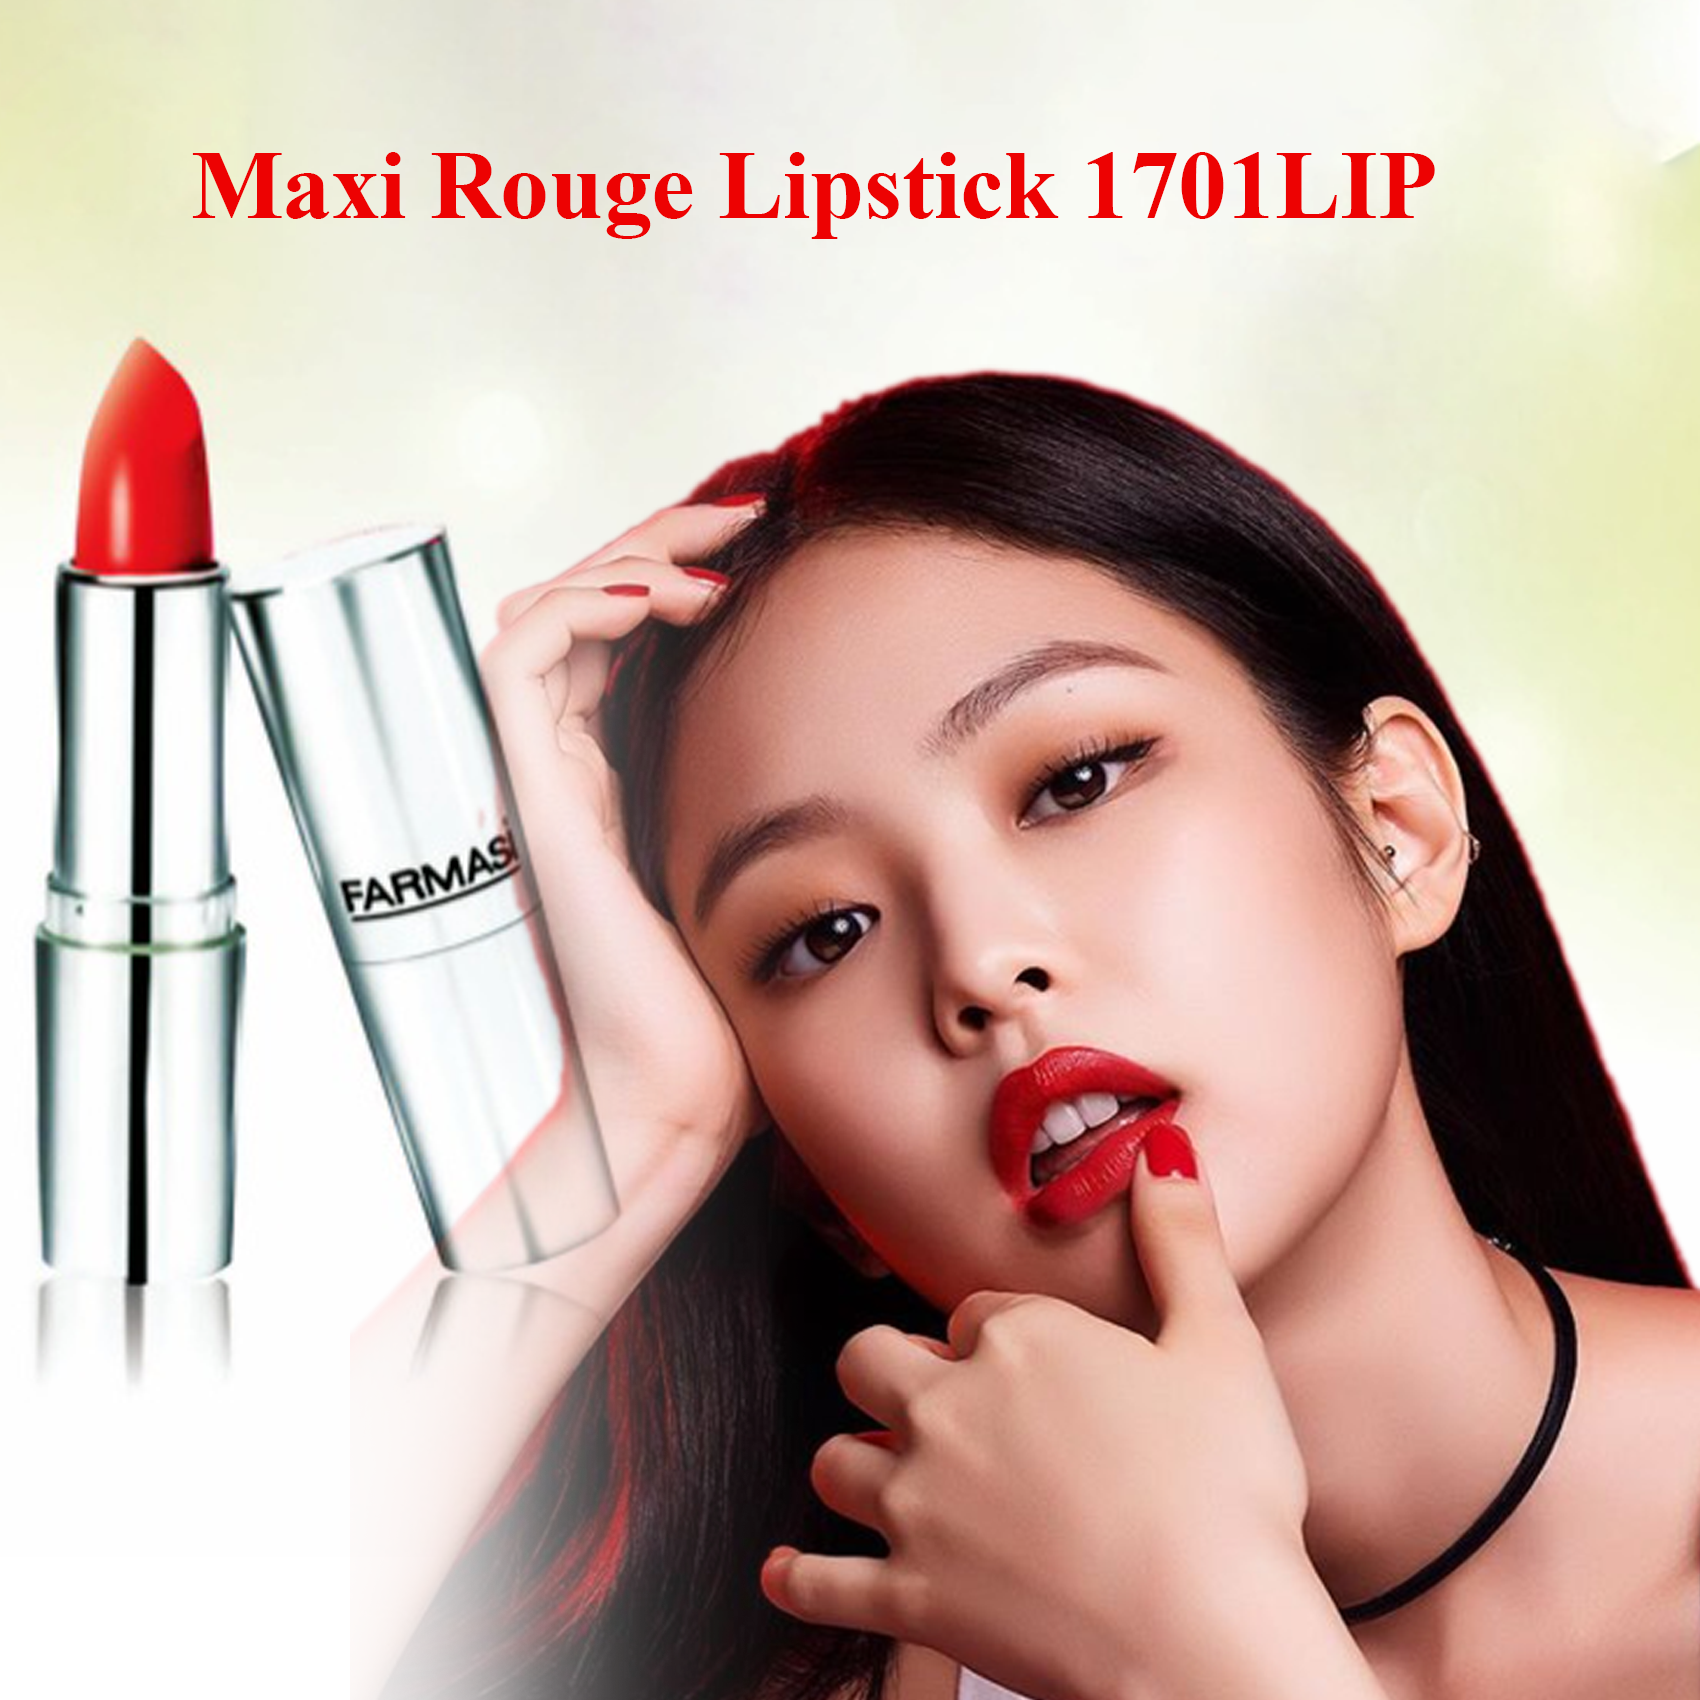 son-moi-maxi-rouge-lipstick-1701lip-son-li-duong-moi-5gr-843